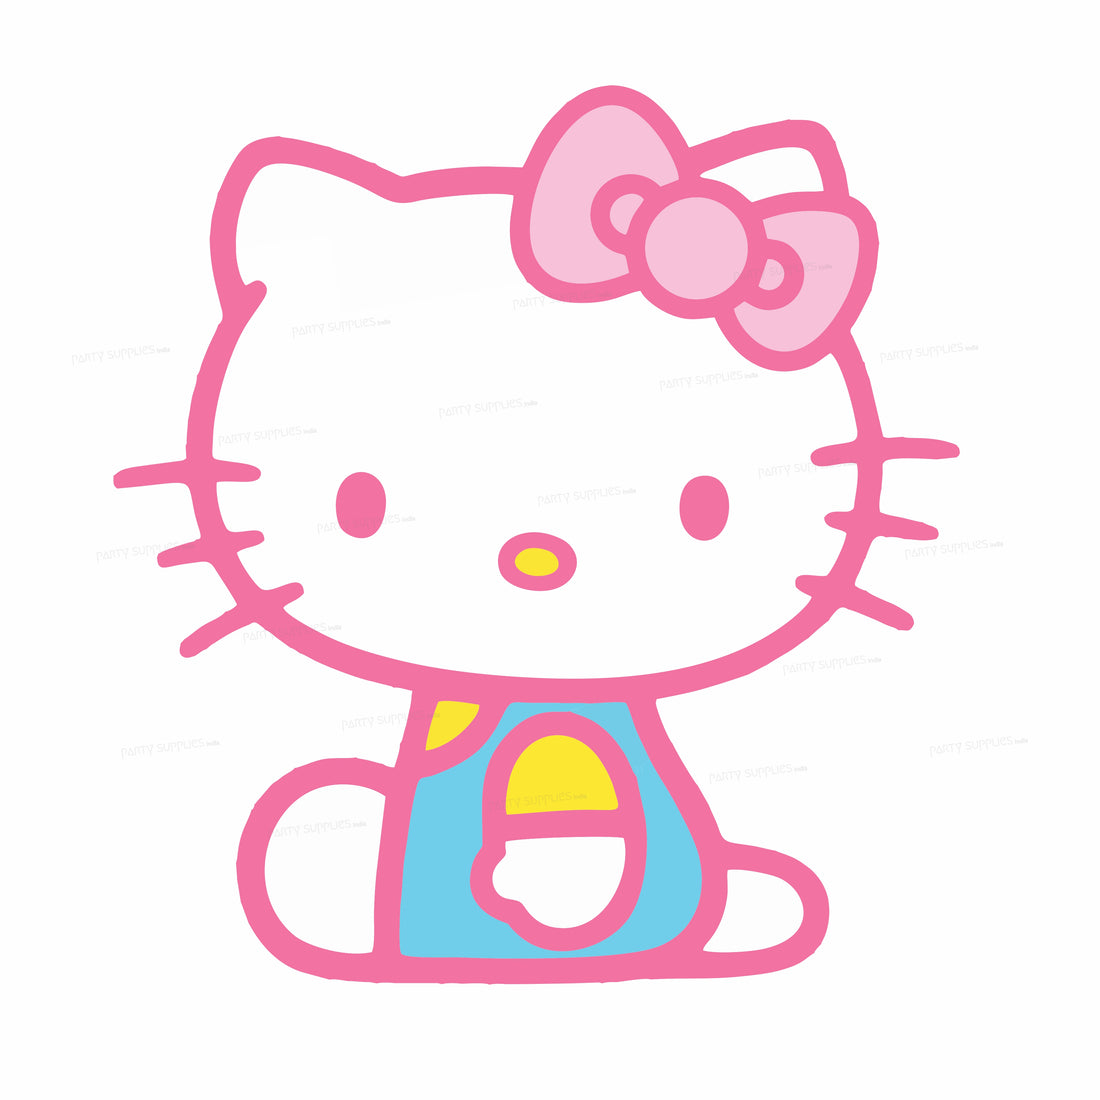 PSI Hello Kitty Theme Cutout - 07